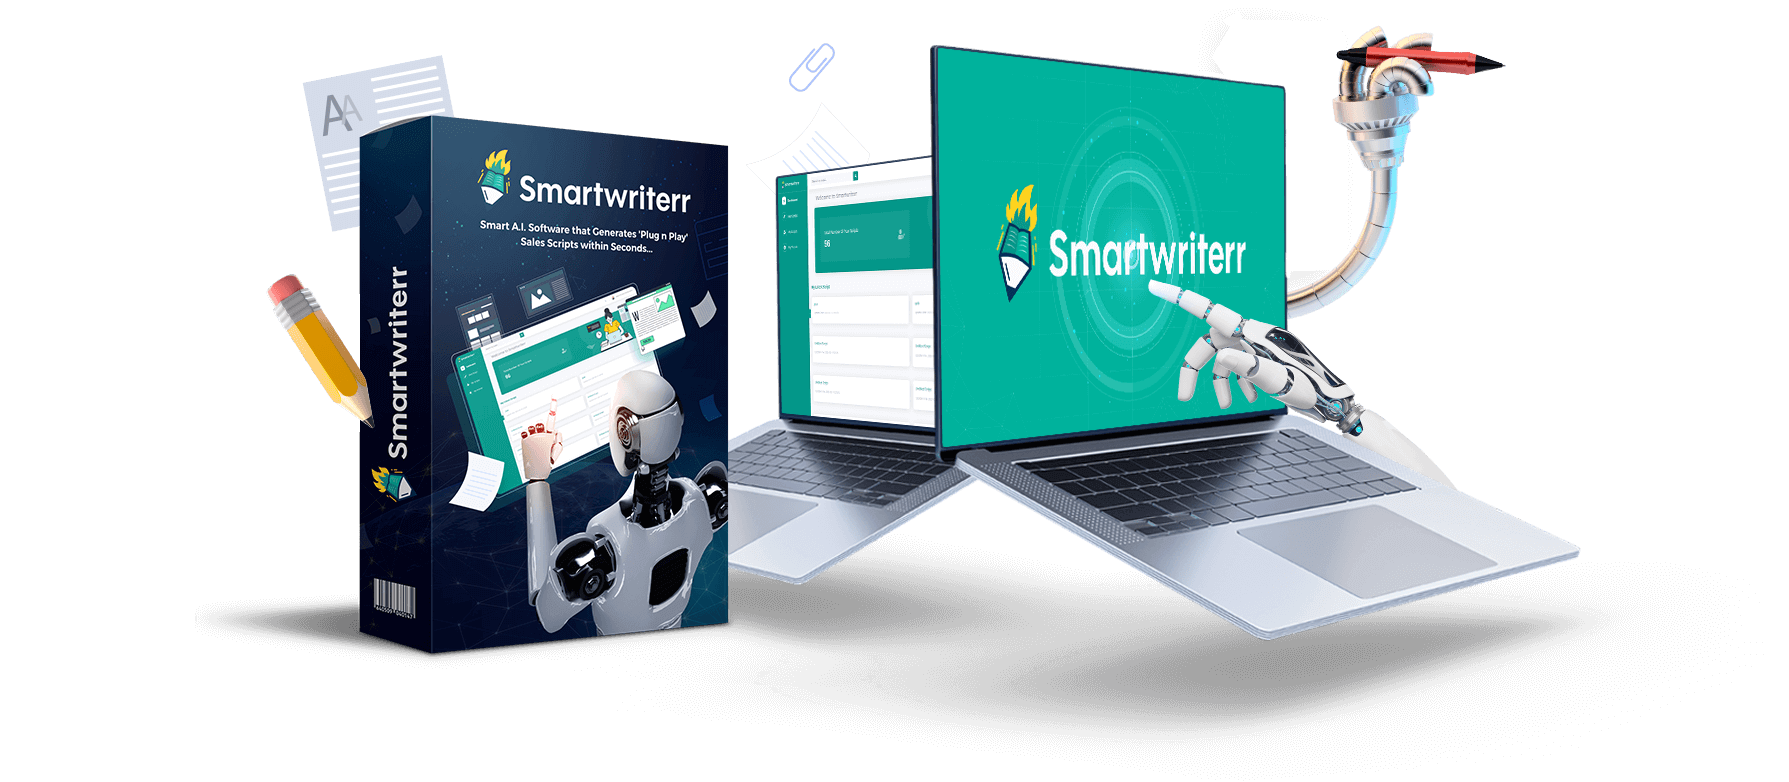 Smartwriterr by Pankaj Malav